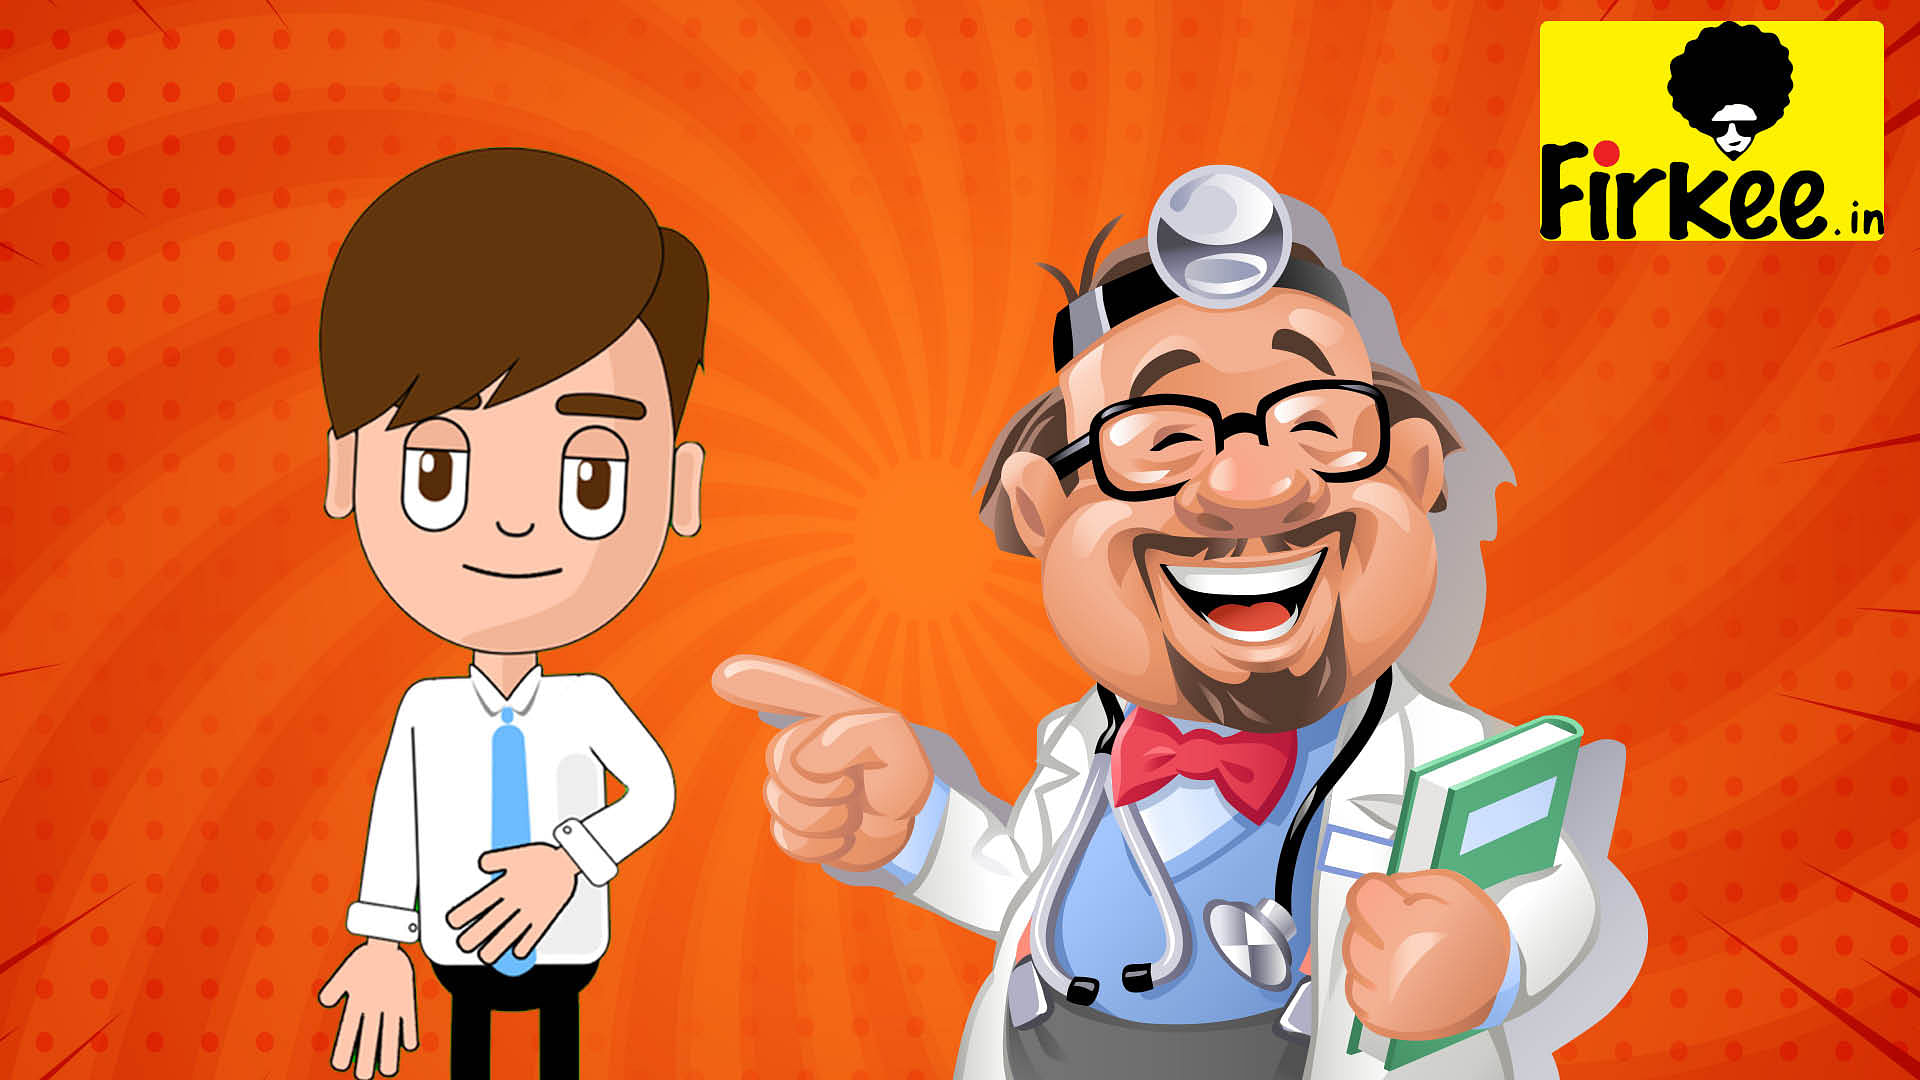 Doctor patient jokes funny jokes viral on social media